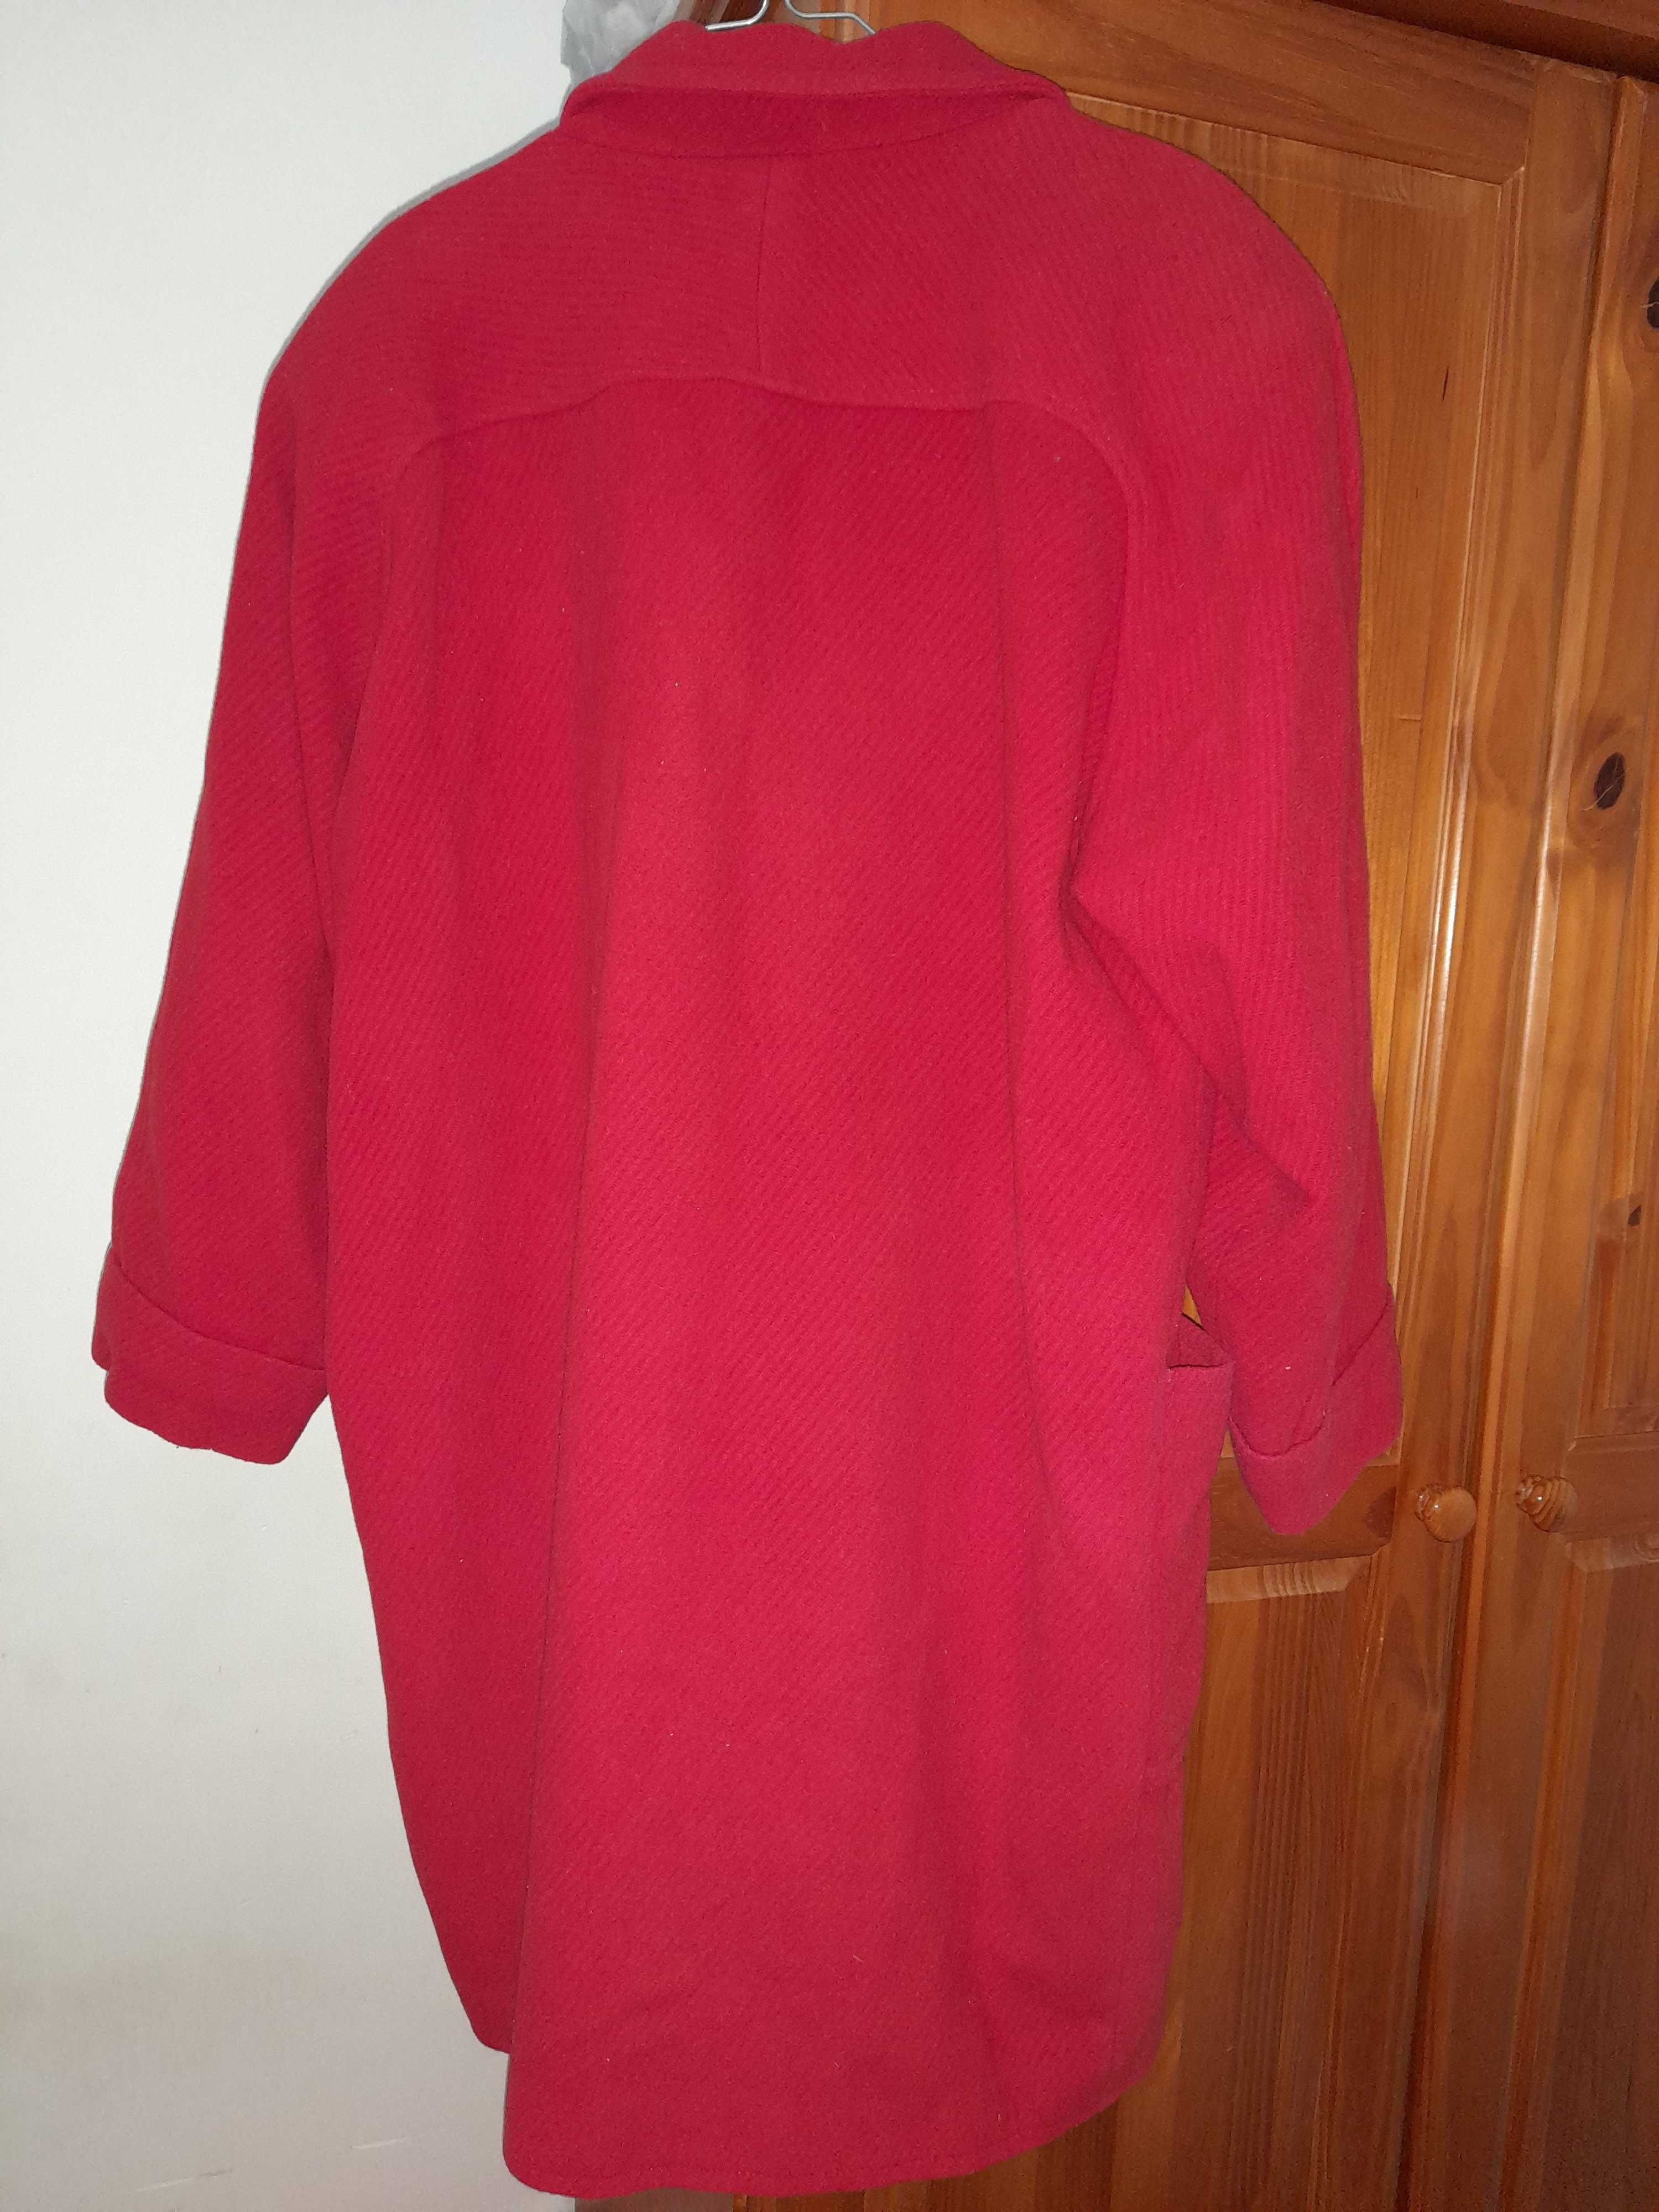 Casaco de inverno, vermelho, tamanho xxl, 10€.